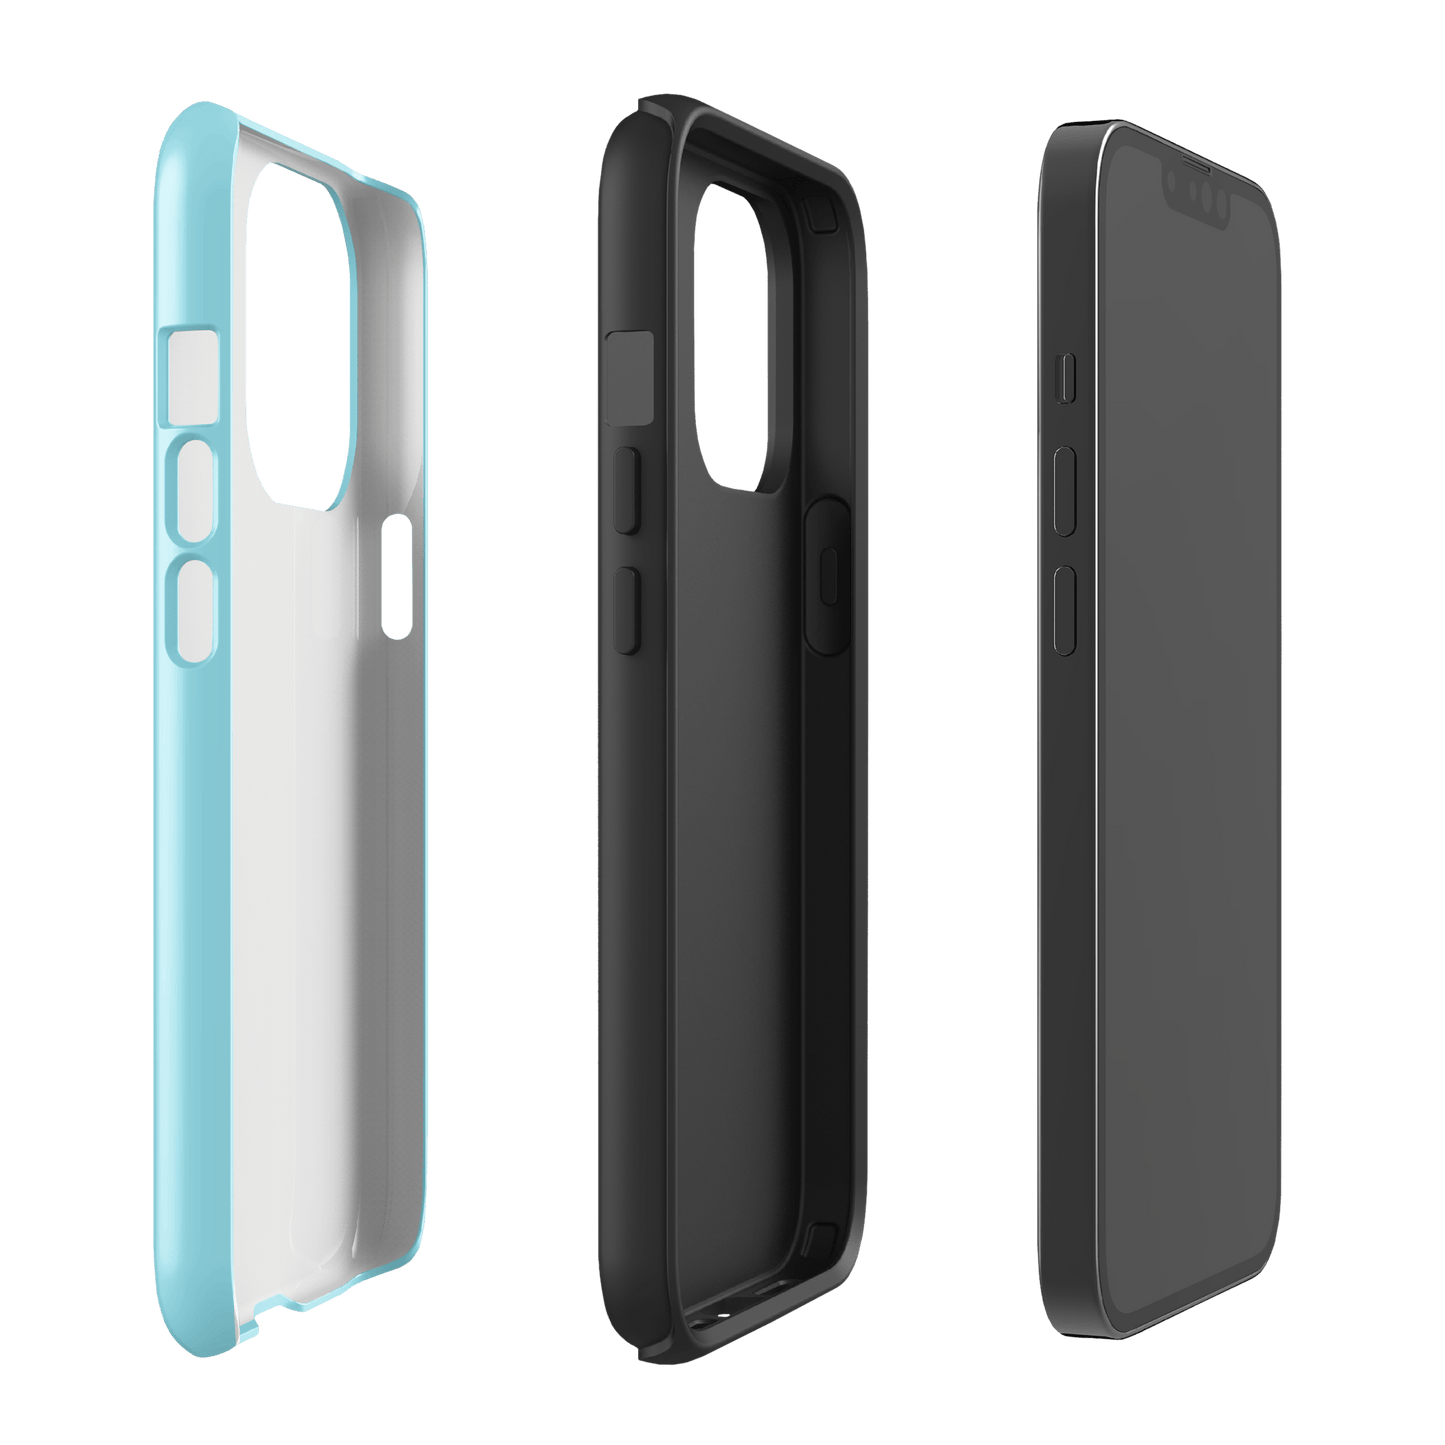 Big Brother Zingbot Tough Phone Case - iPhone - Paramount Shop